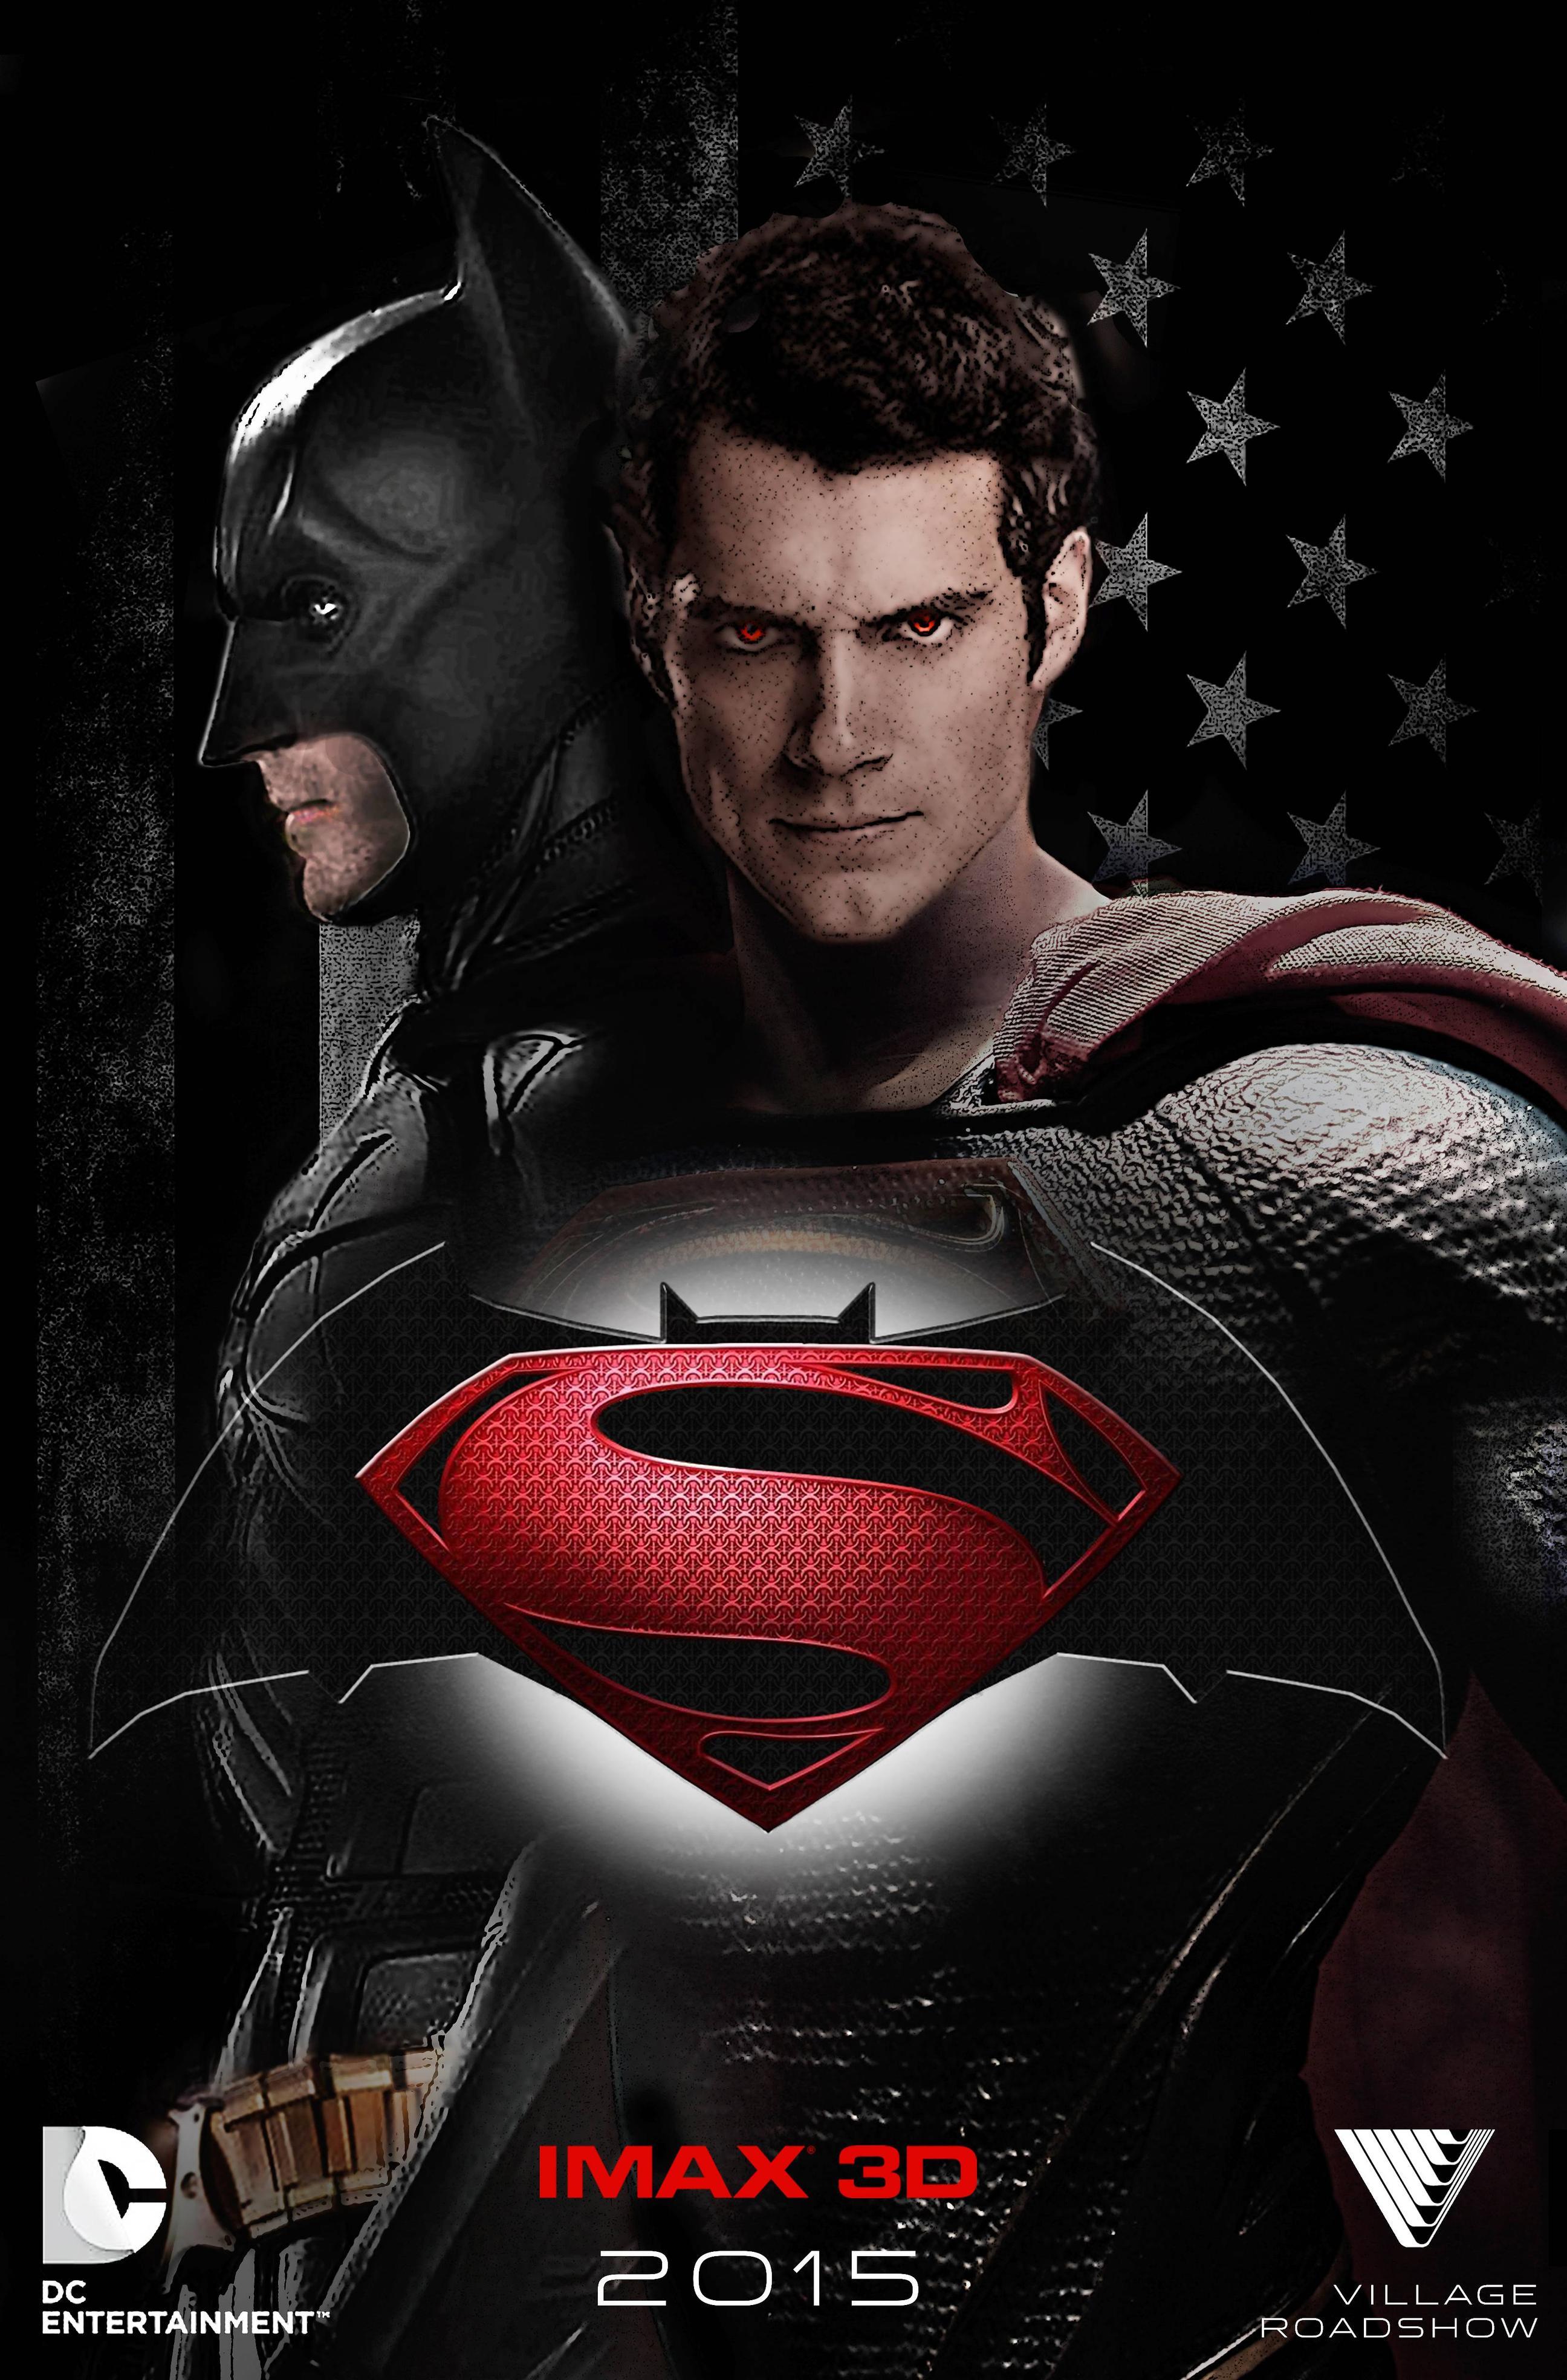 Download image description for batman vs superman wallpapers batman